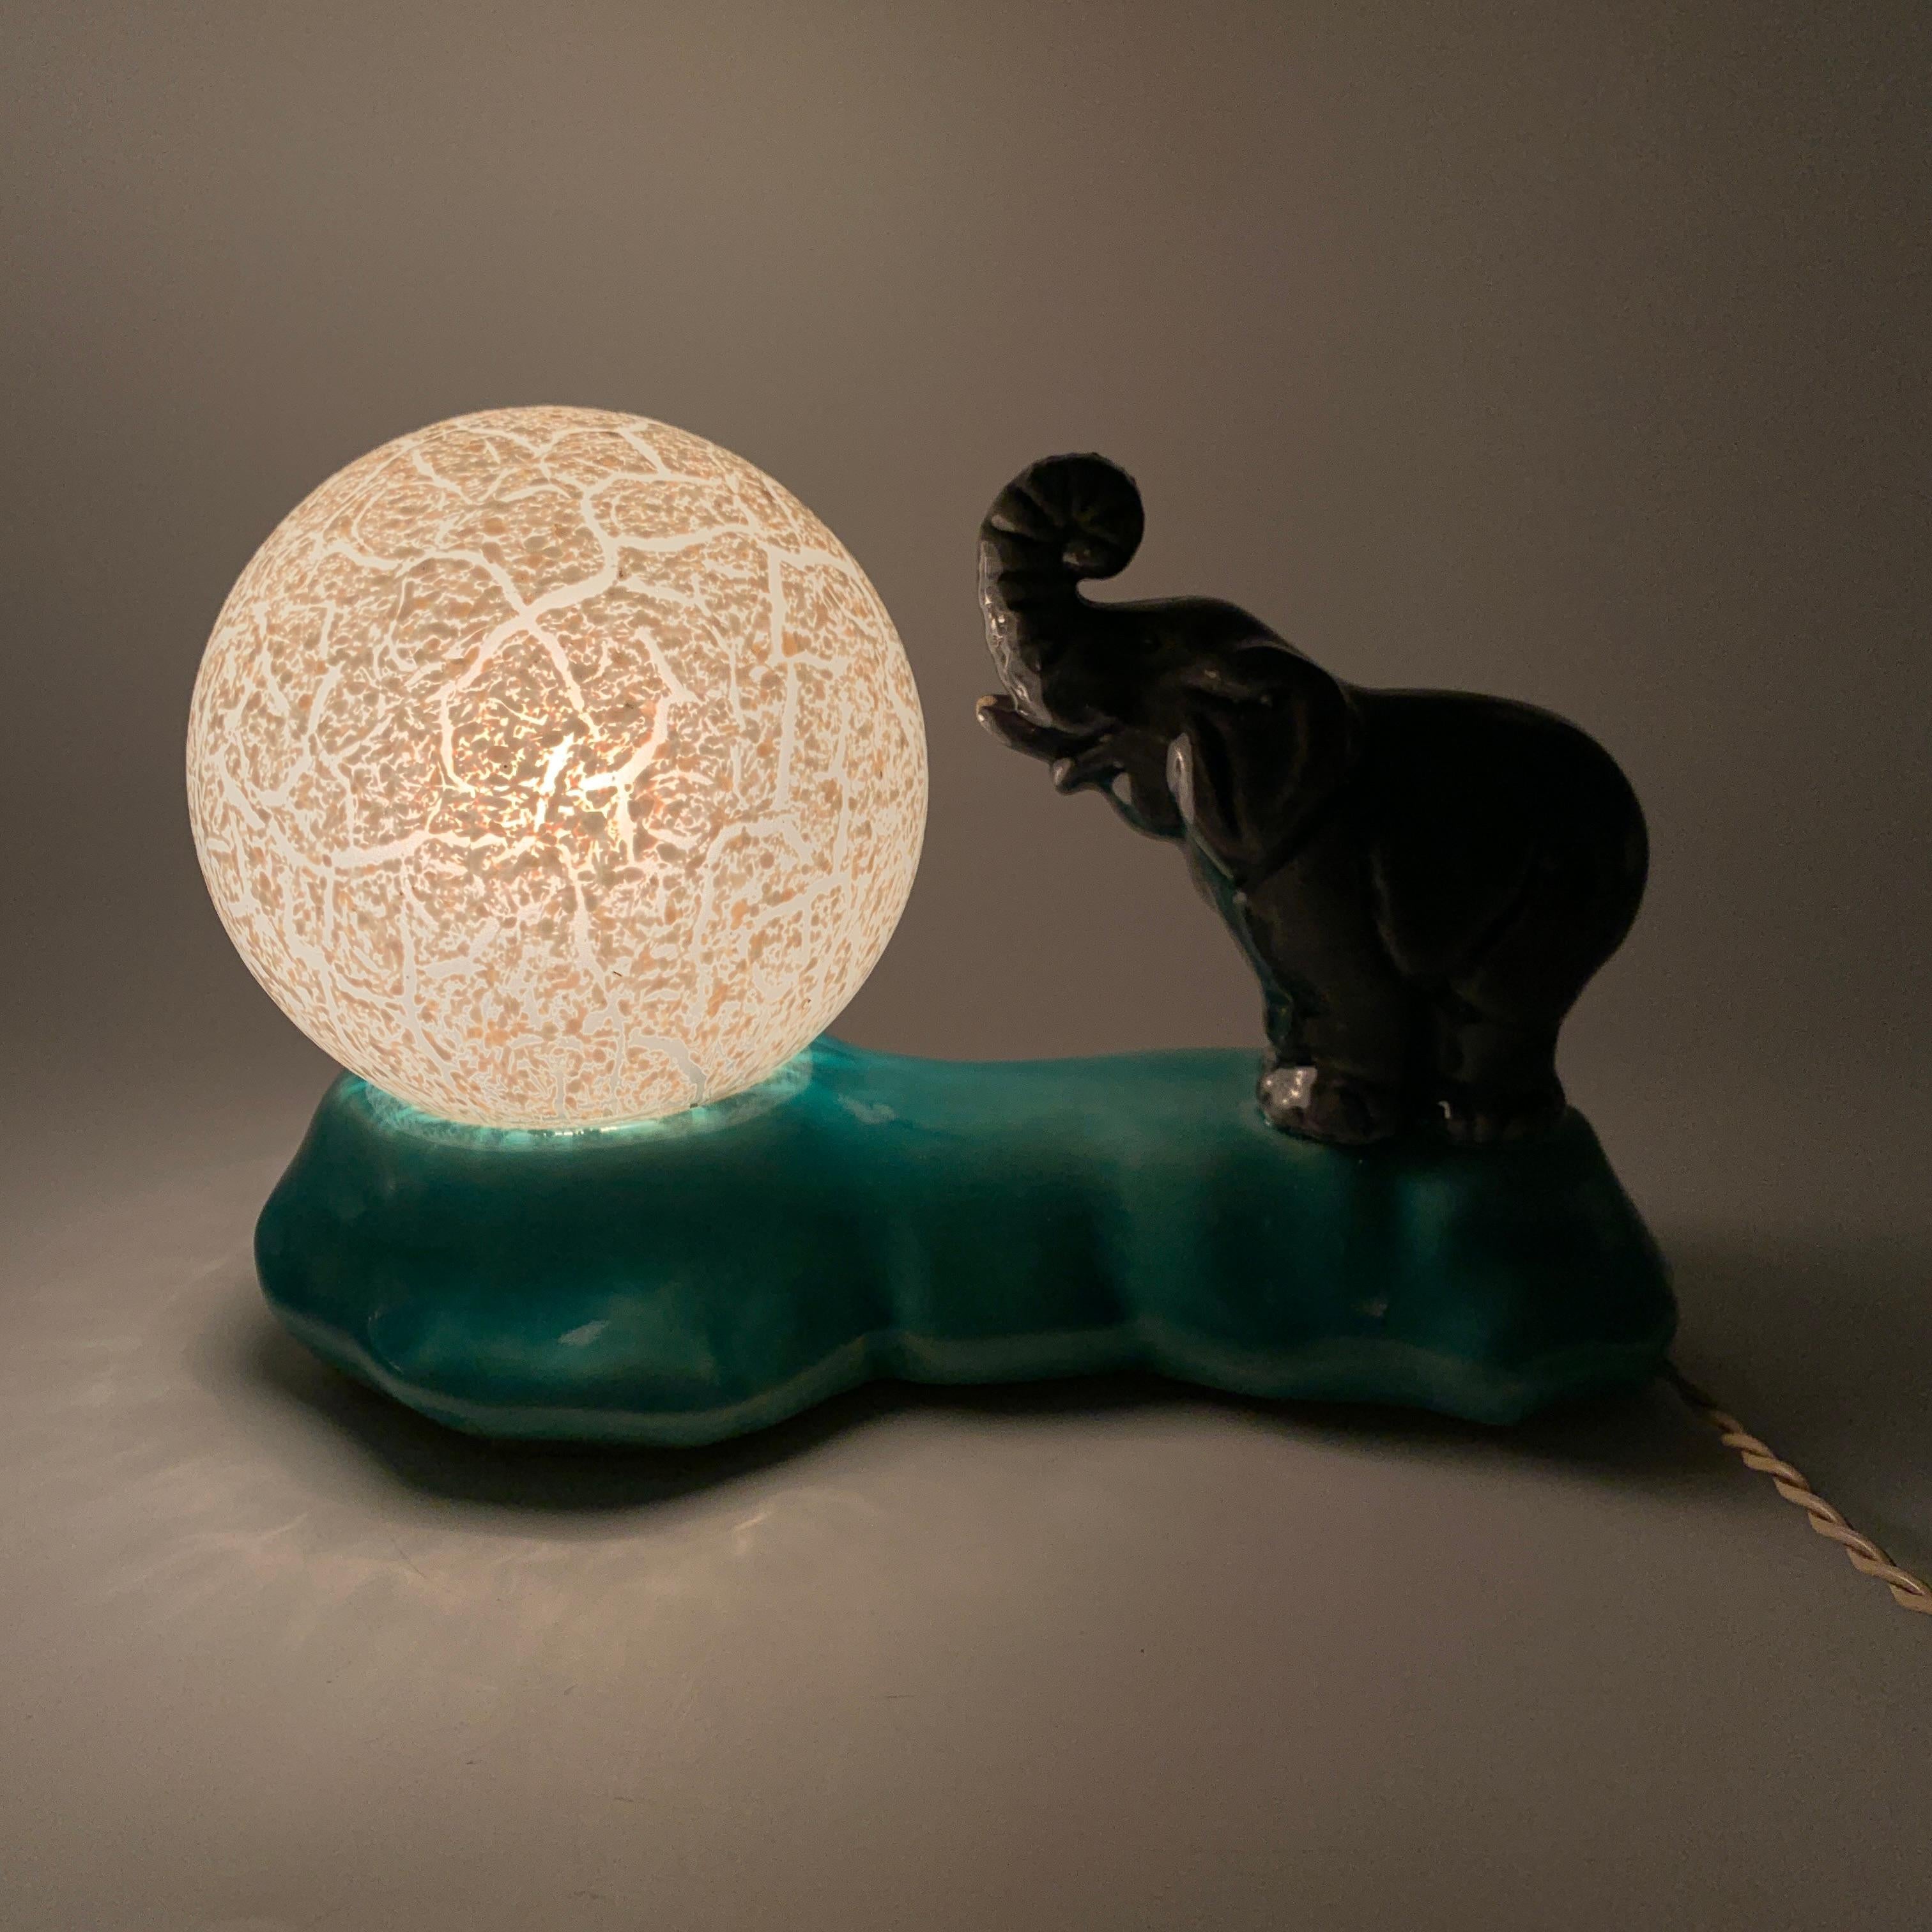 Description : 
Superbe lampe de chevet de style et d’epoque Art Déco en céramique representant un éléphant et son ballon. 

Dimensions : 
Hauteur : 13 cms
Largeur : 20,5 cms
Profondeur : 12 cms

Etat : 
Bon état. A signaler deux minuscules